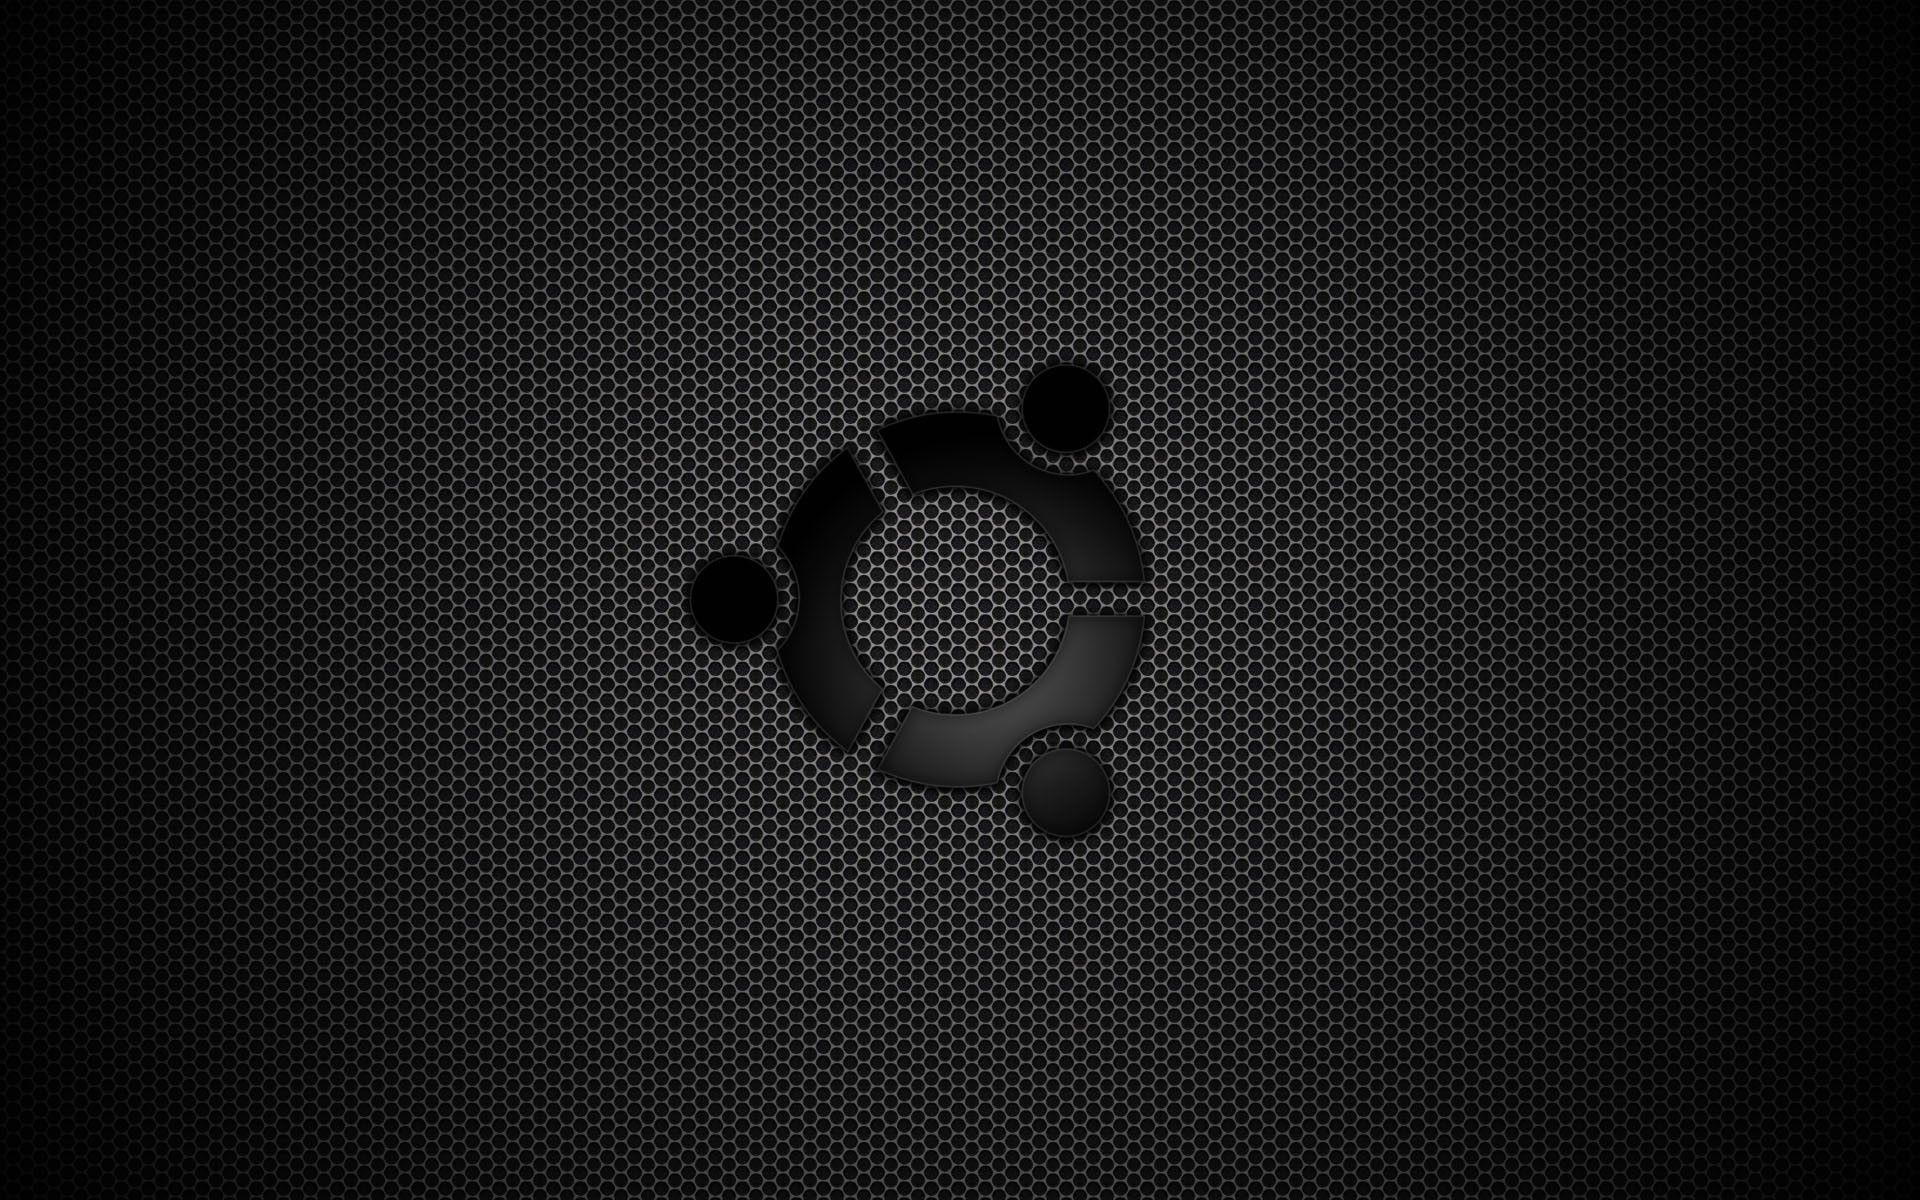 Ubuntu Background Wallpaper. Places to Visit